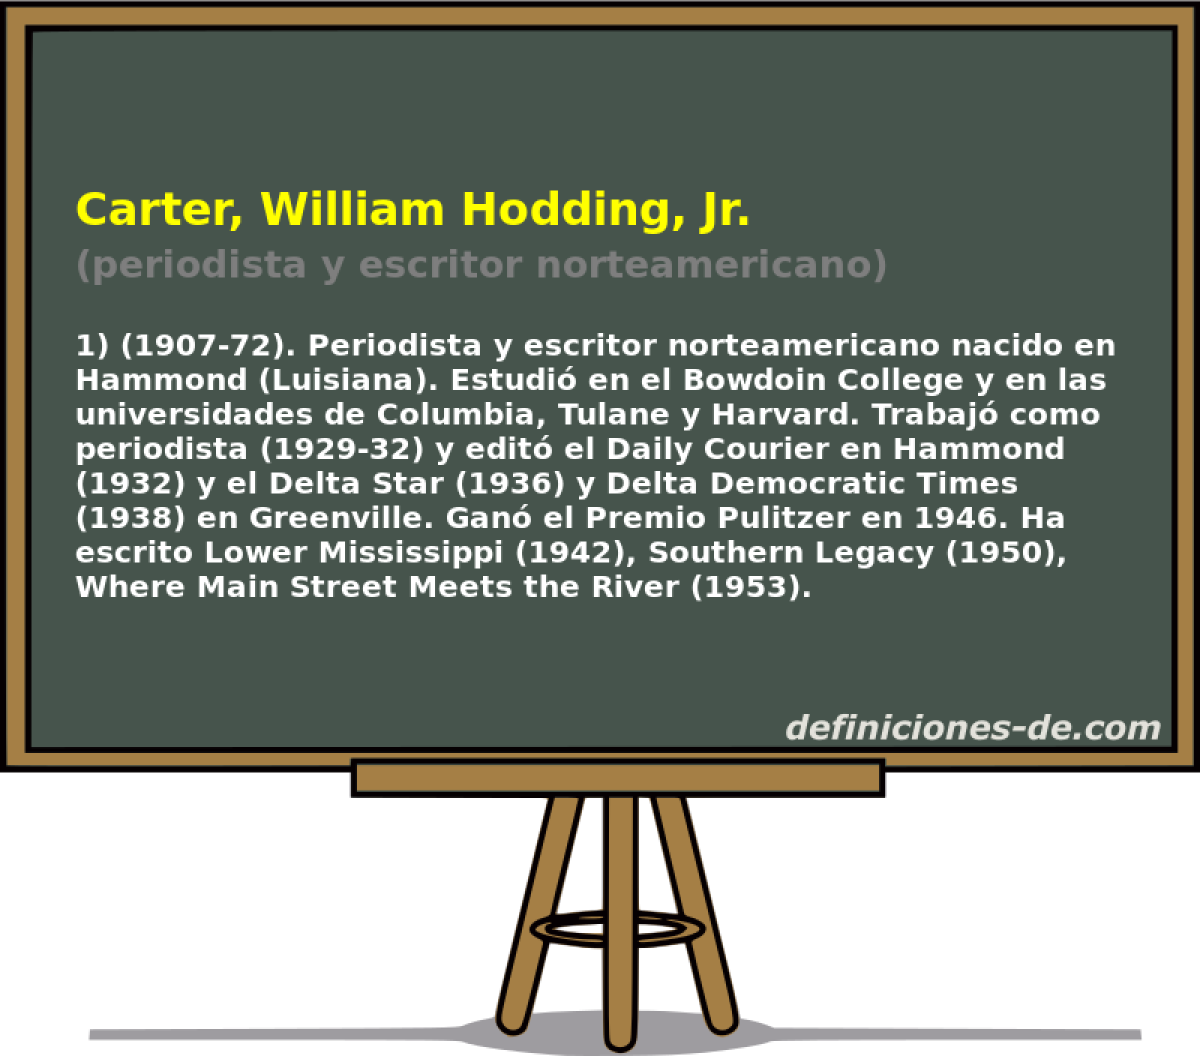 Carter, William Hodding, Jr. (periodista y escritor norteamericano)